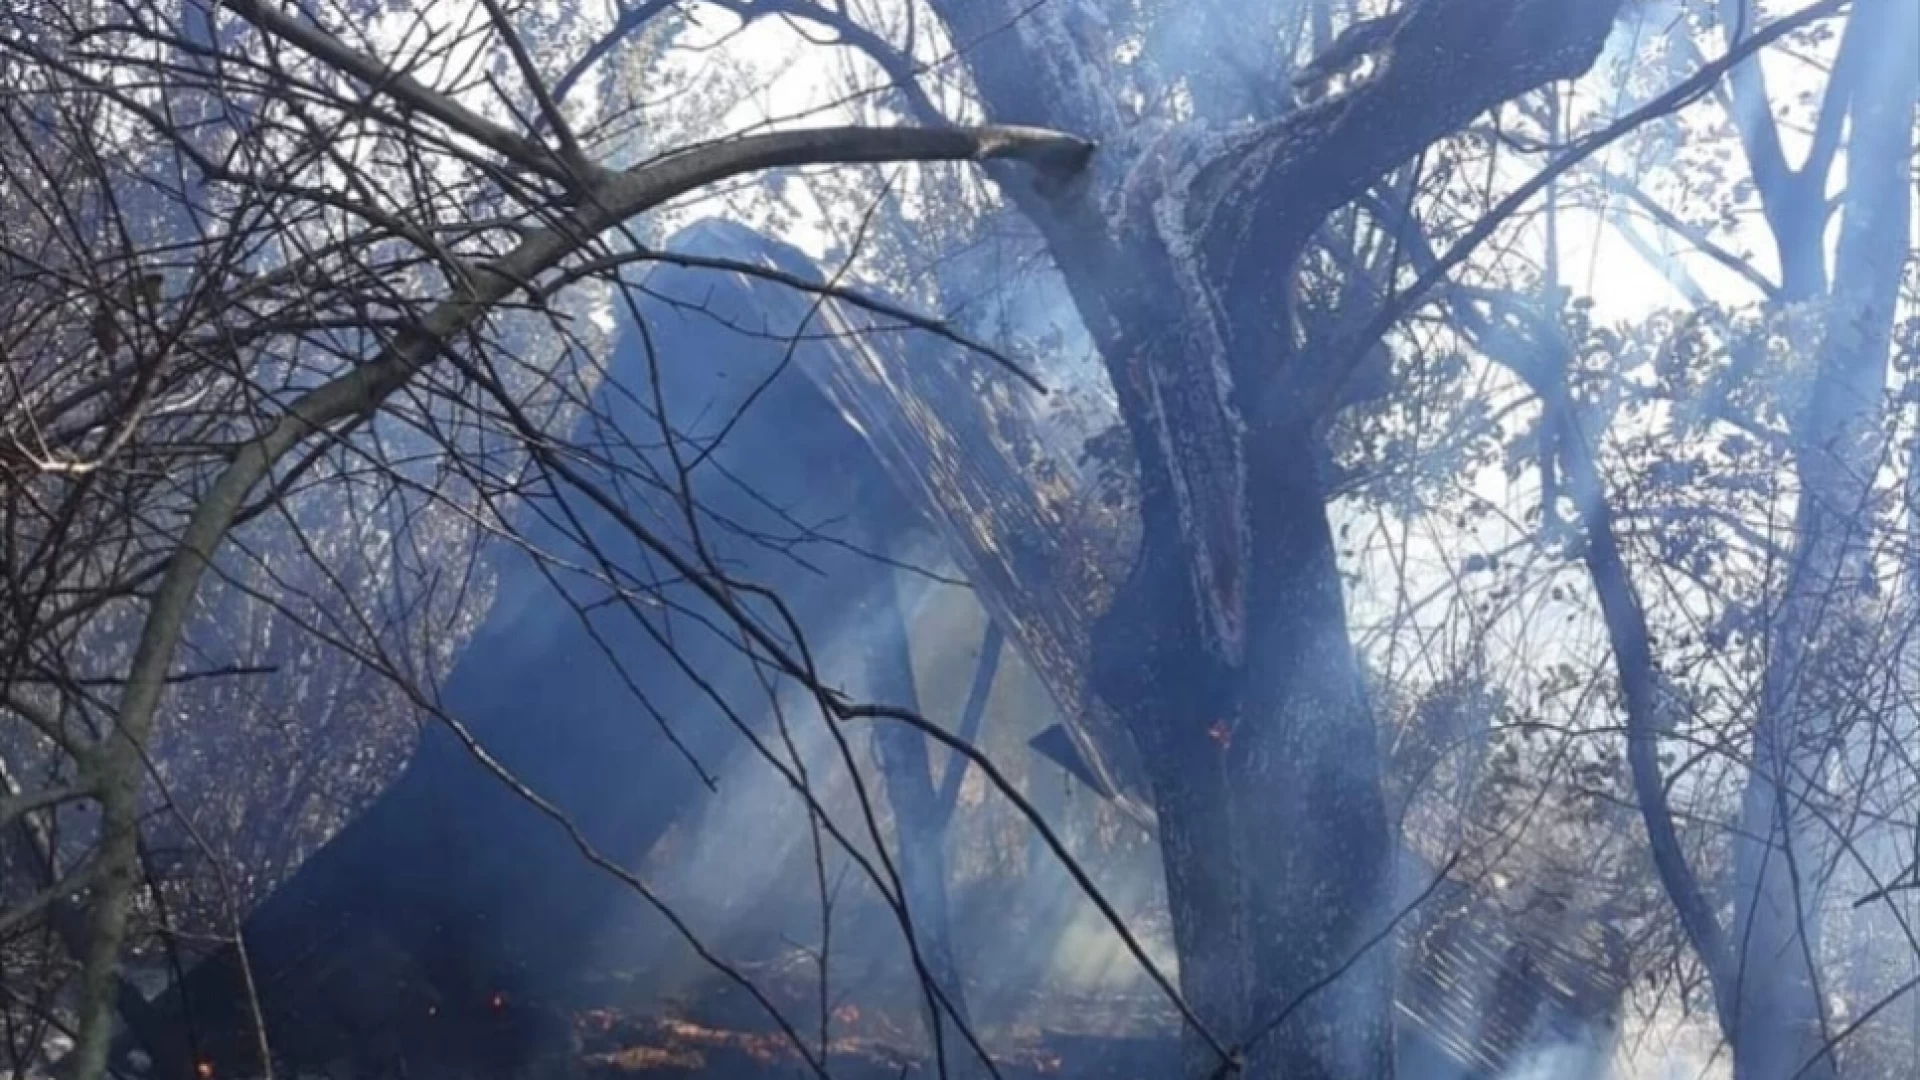 Colli a Volturno: vasto incendio nei pressi della frazione Valloni. Ettari di bosco e uliveti andati in fumo.